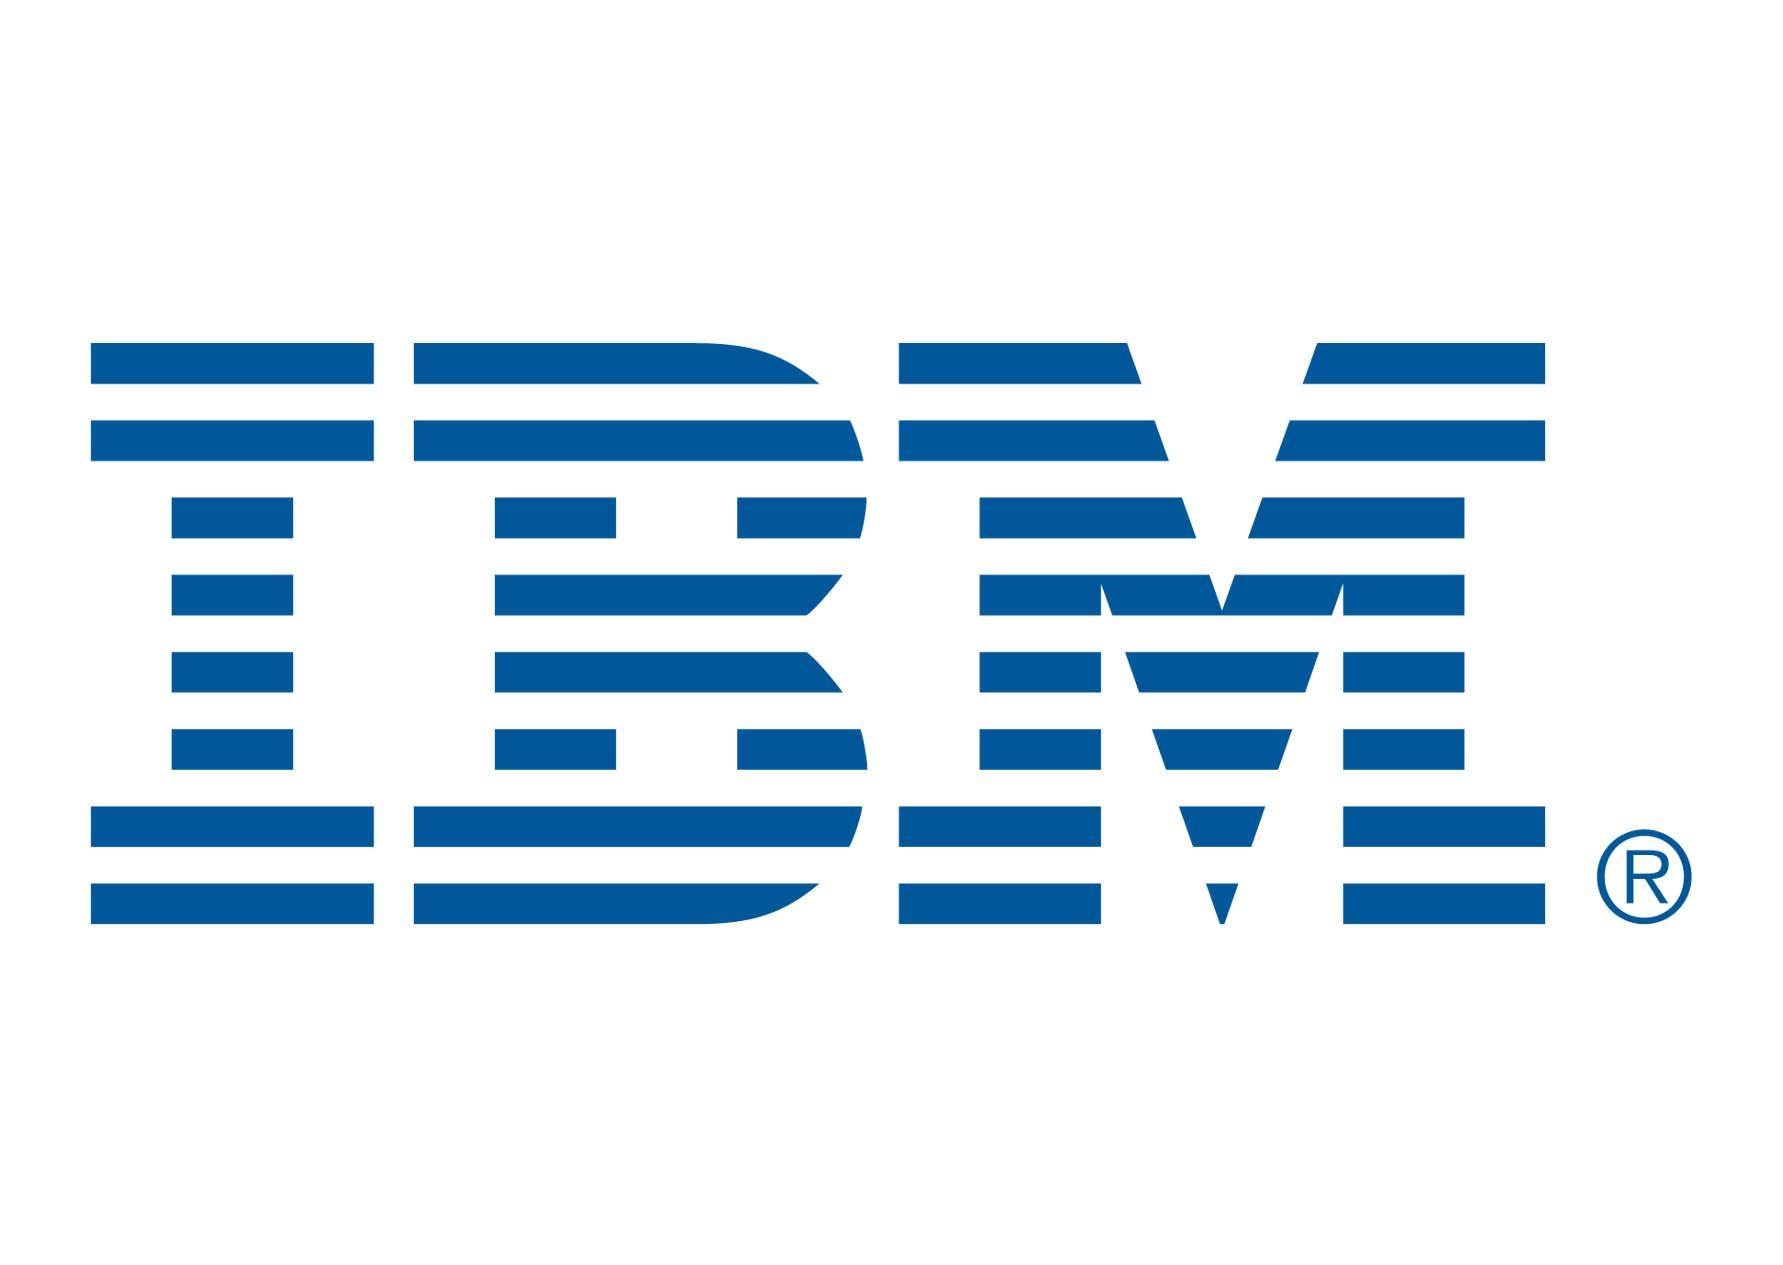 IBM Logo - File:IBM logo in.jpg - Wikimedia Commons